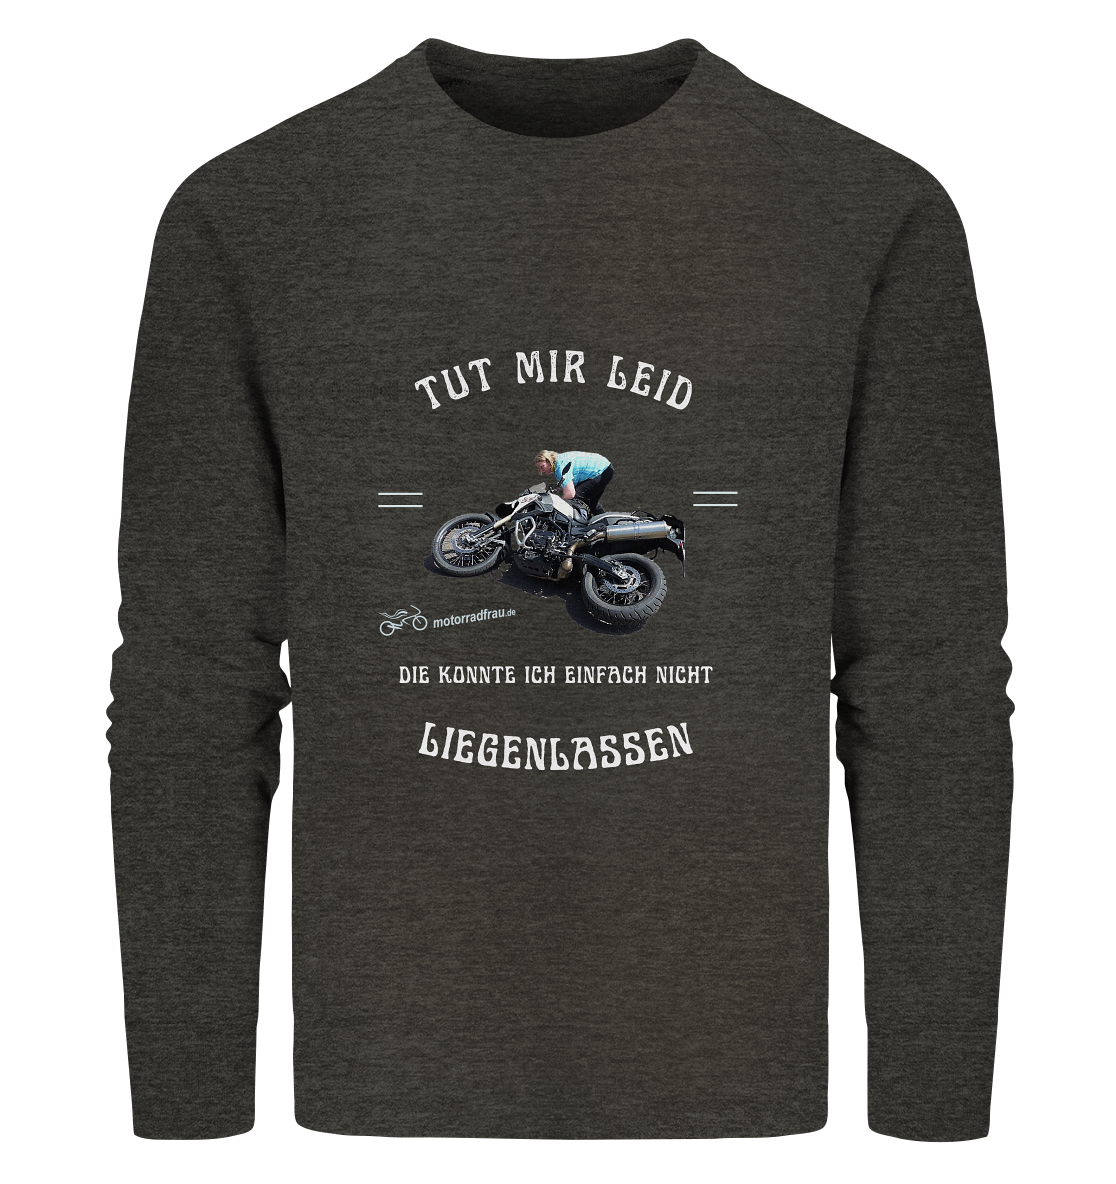 "Motorradfrau _ Tut mir leid, die konnte ich einfach nicht liegenlassen" | Sweater mit Foto und Motorrad-Spruch in hellem Design